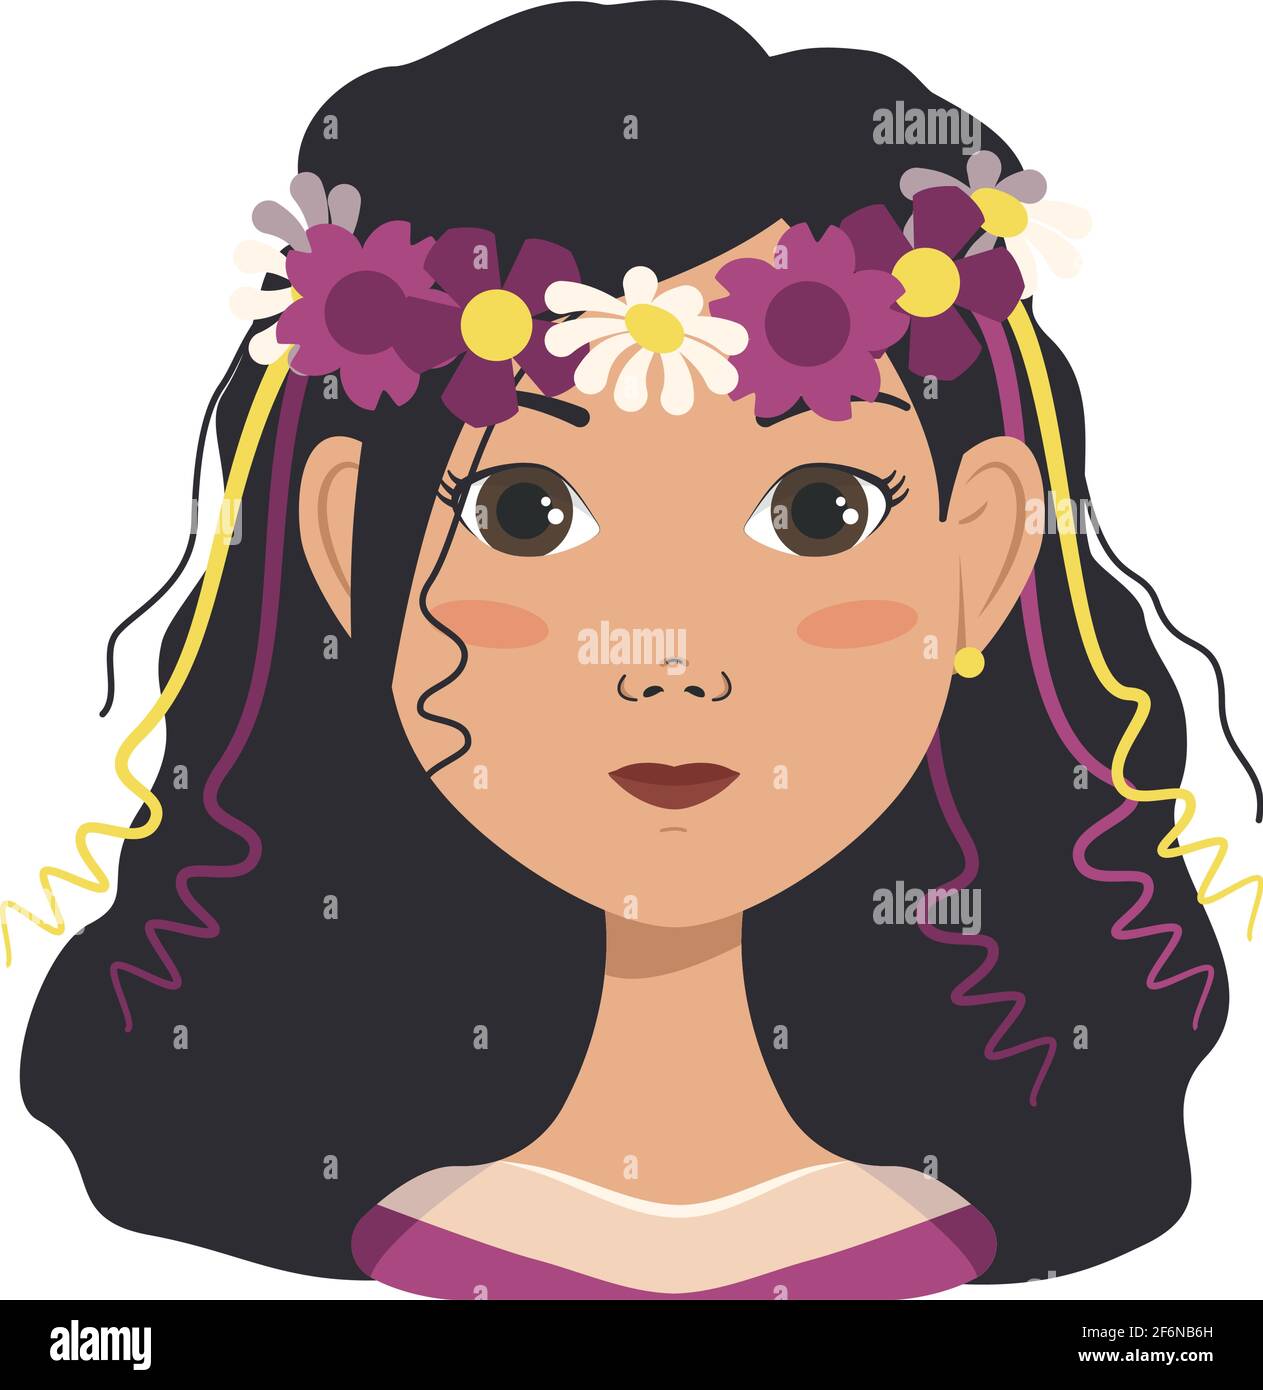 Avatar de femme avec cheveux noirs et couronne de fleurs de printemps ou d'été. Illustration de Vecteur